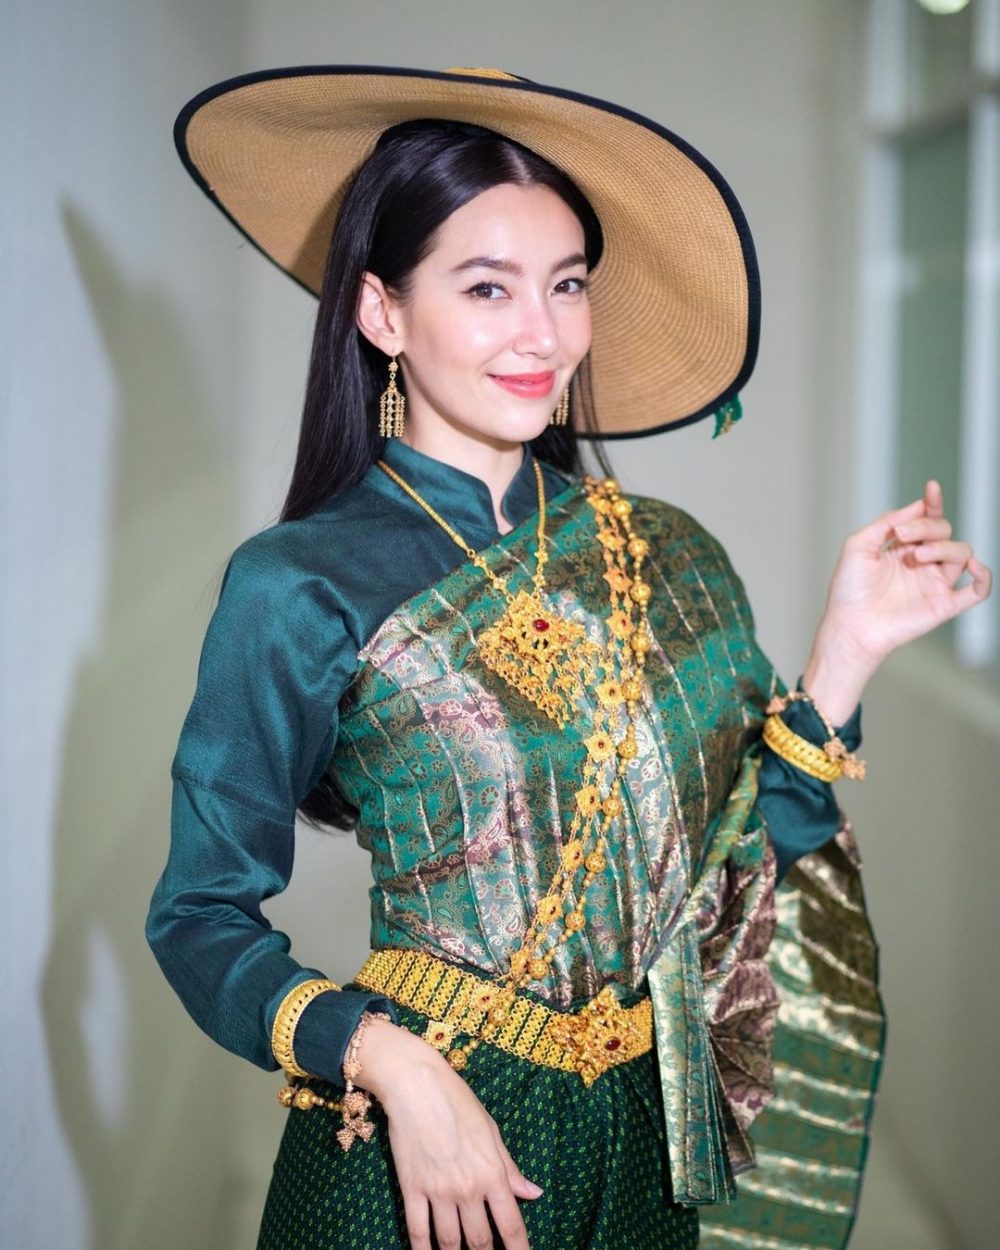 Các diễn viên nữ Thái Lan nổi tiếng: 15 diễn viên nổi tiếng nhất 2022